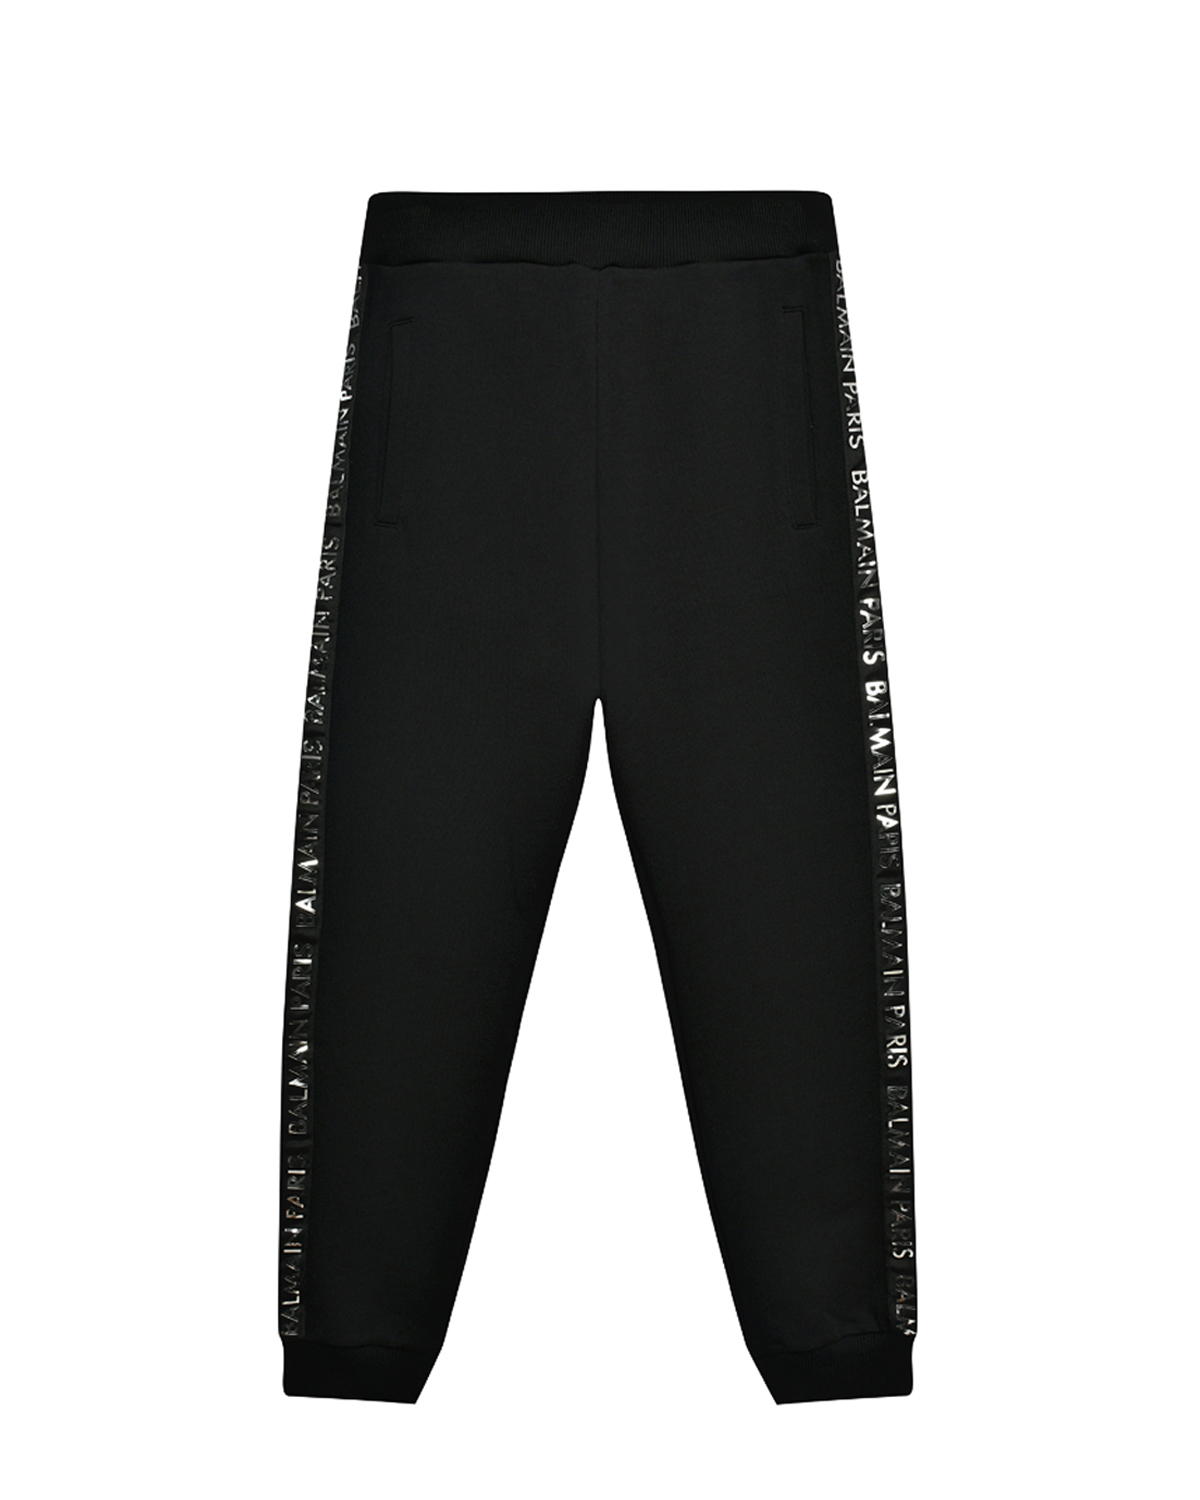 Спортивные брюки с брендированными лампасами Balmain, размер 164, цвет черный - фото 1